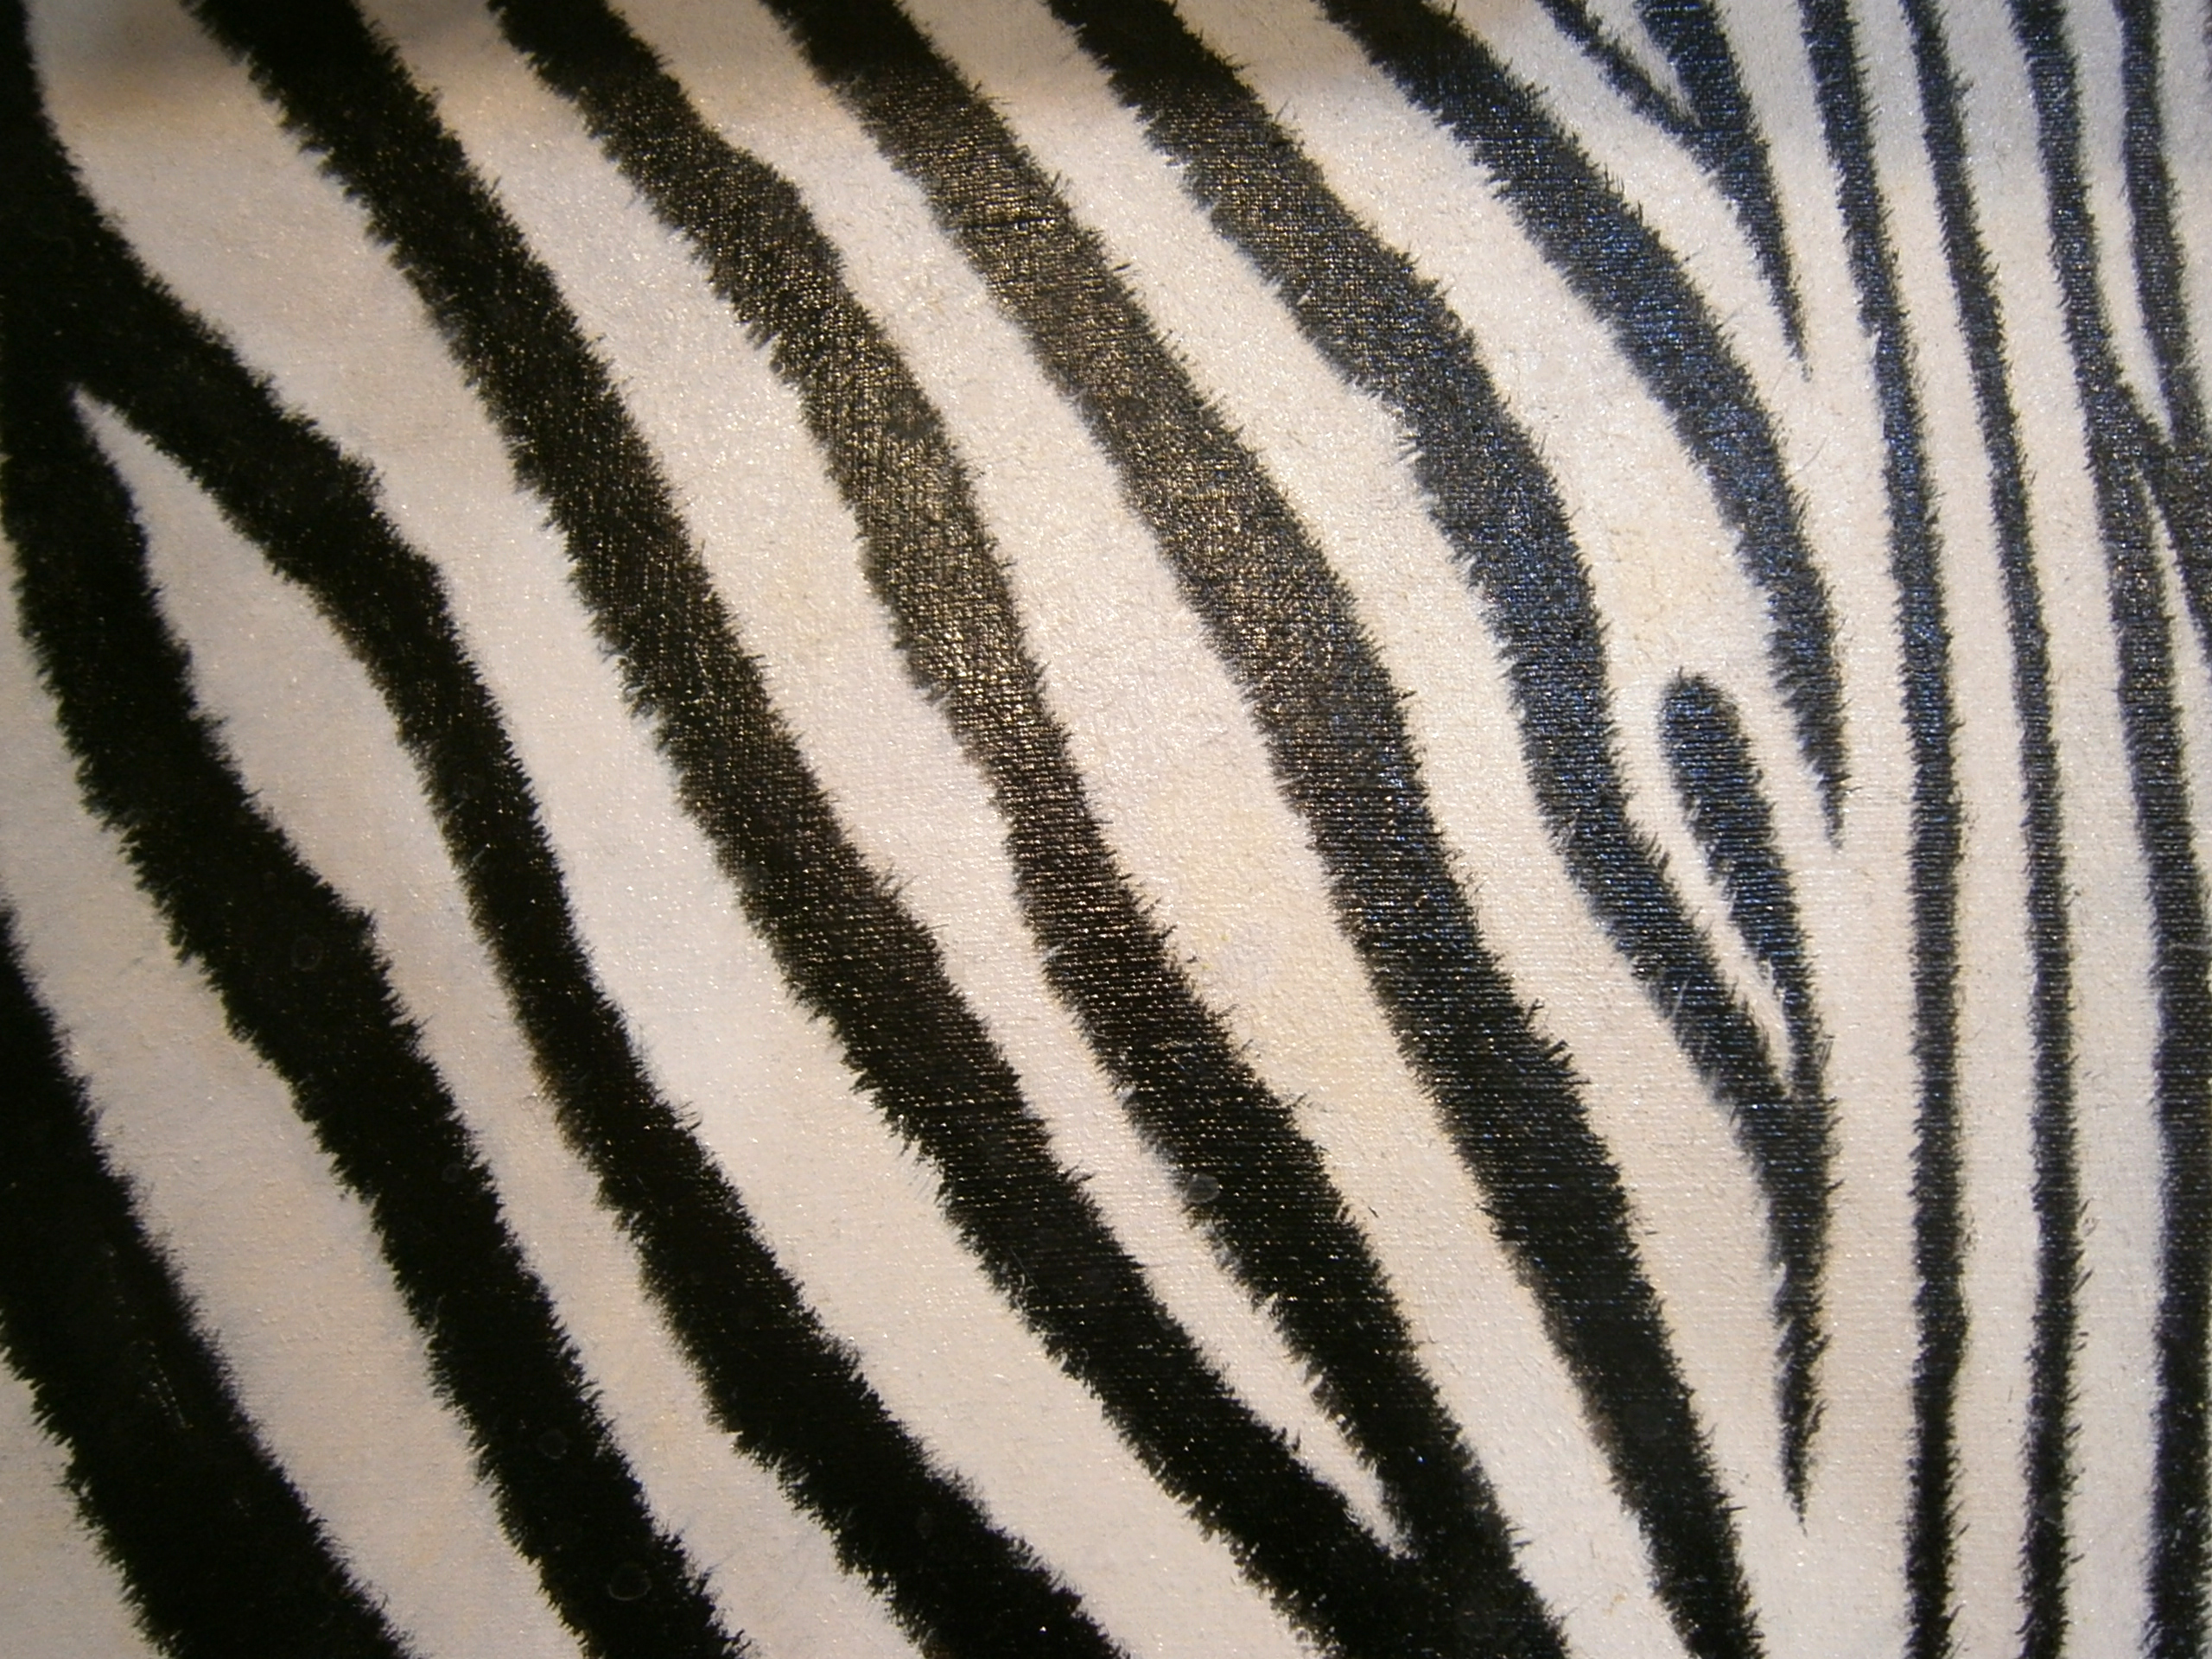 zebra-06.jpg?1574639783648